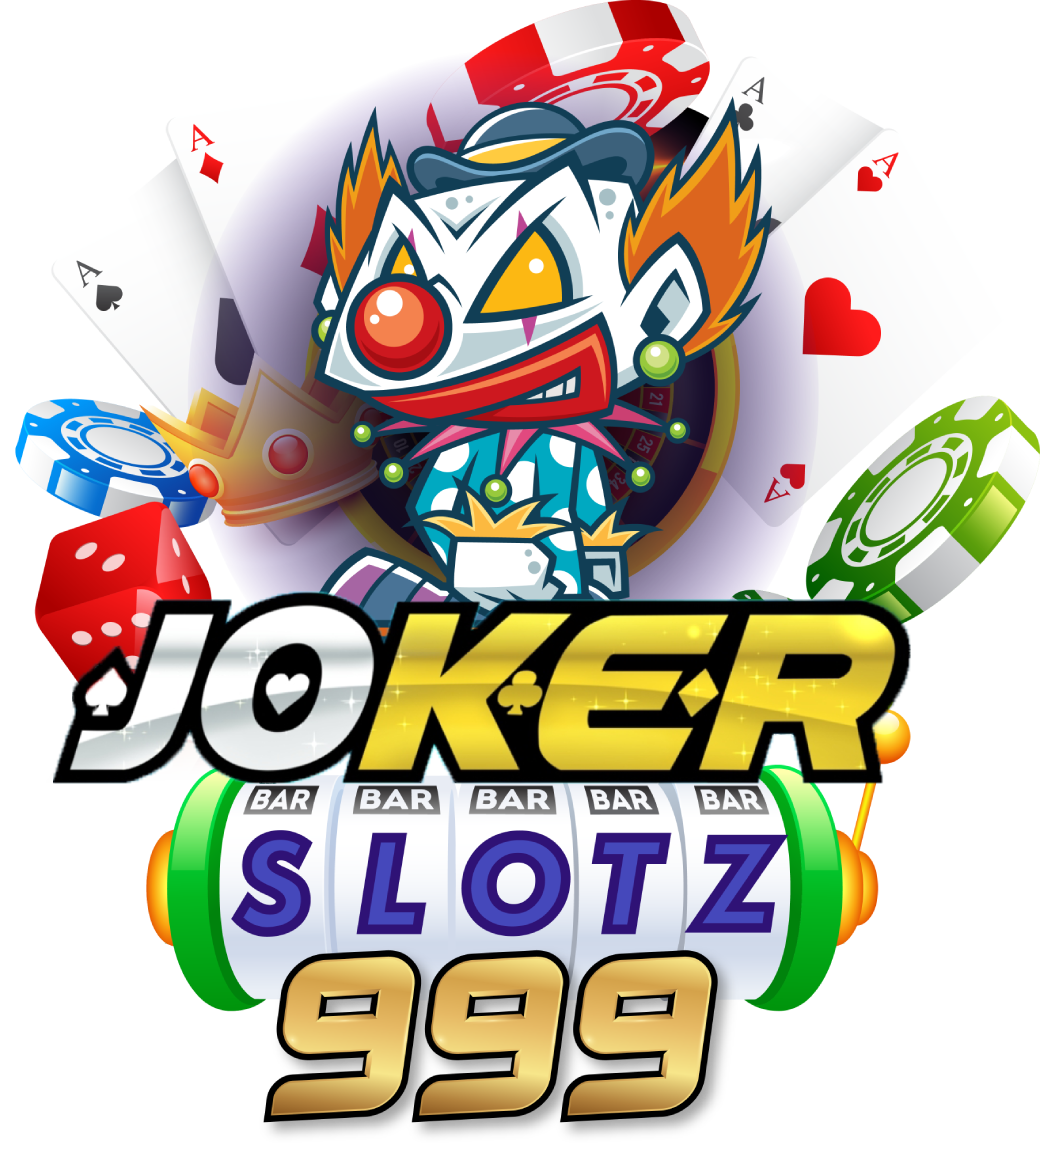 Joker999